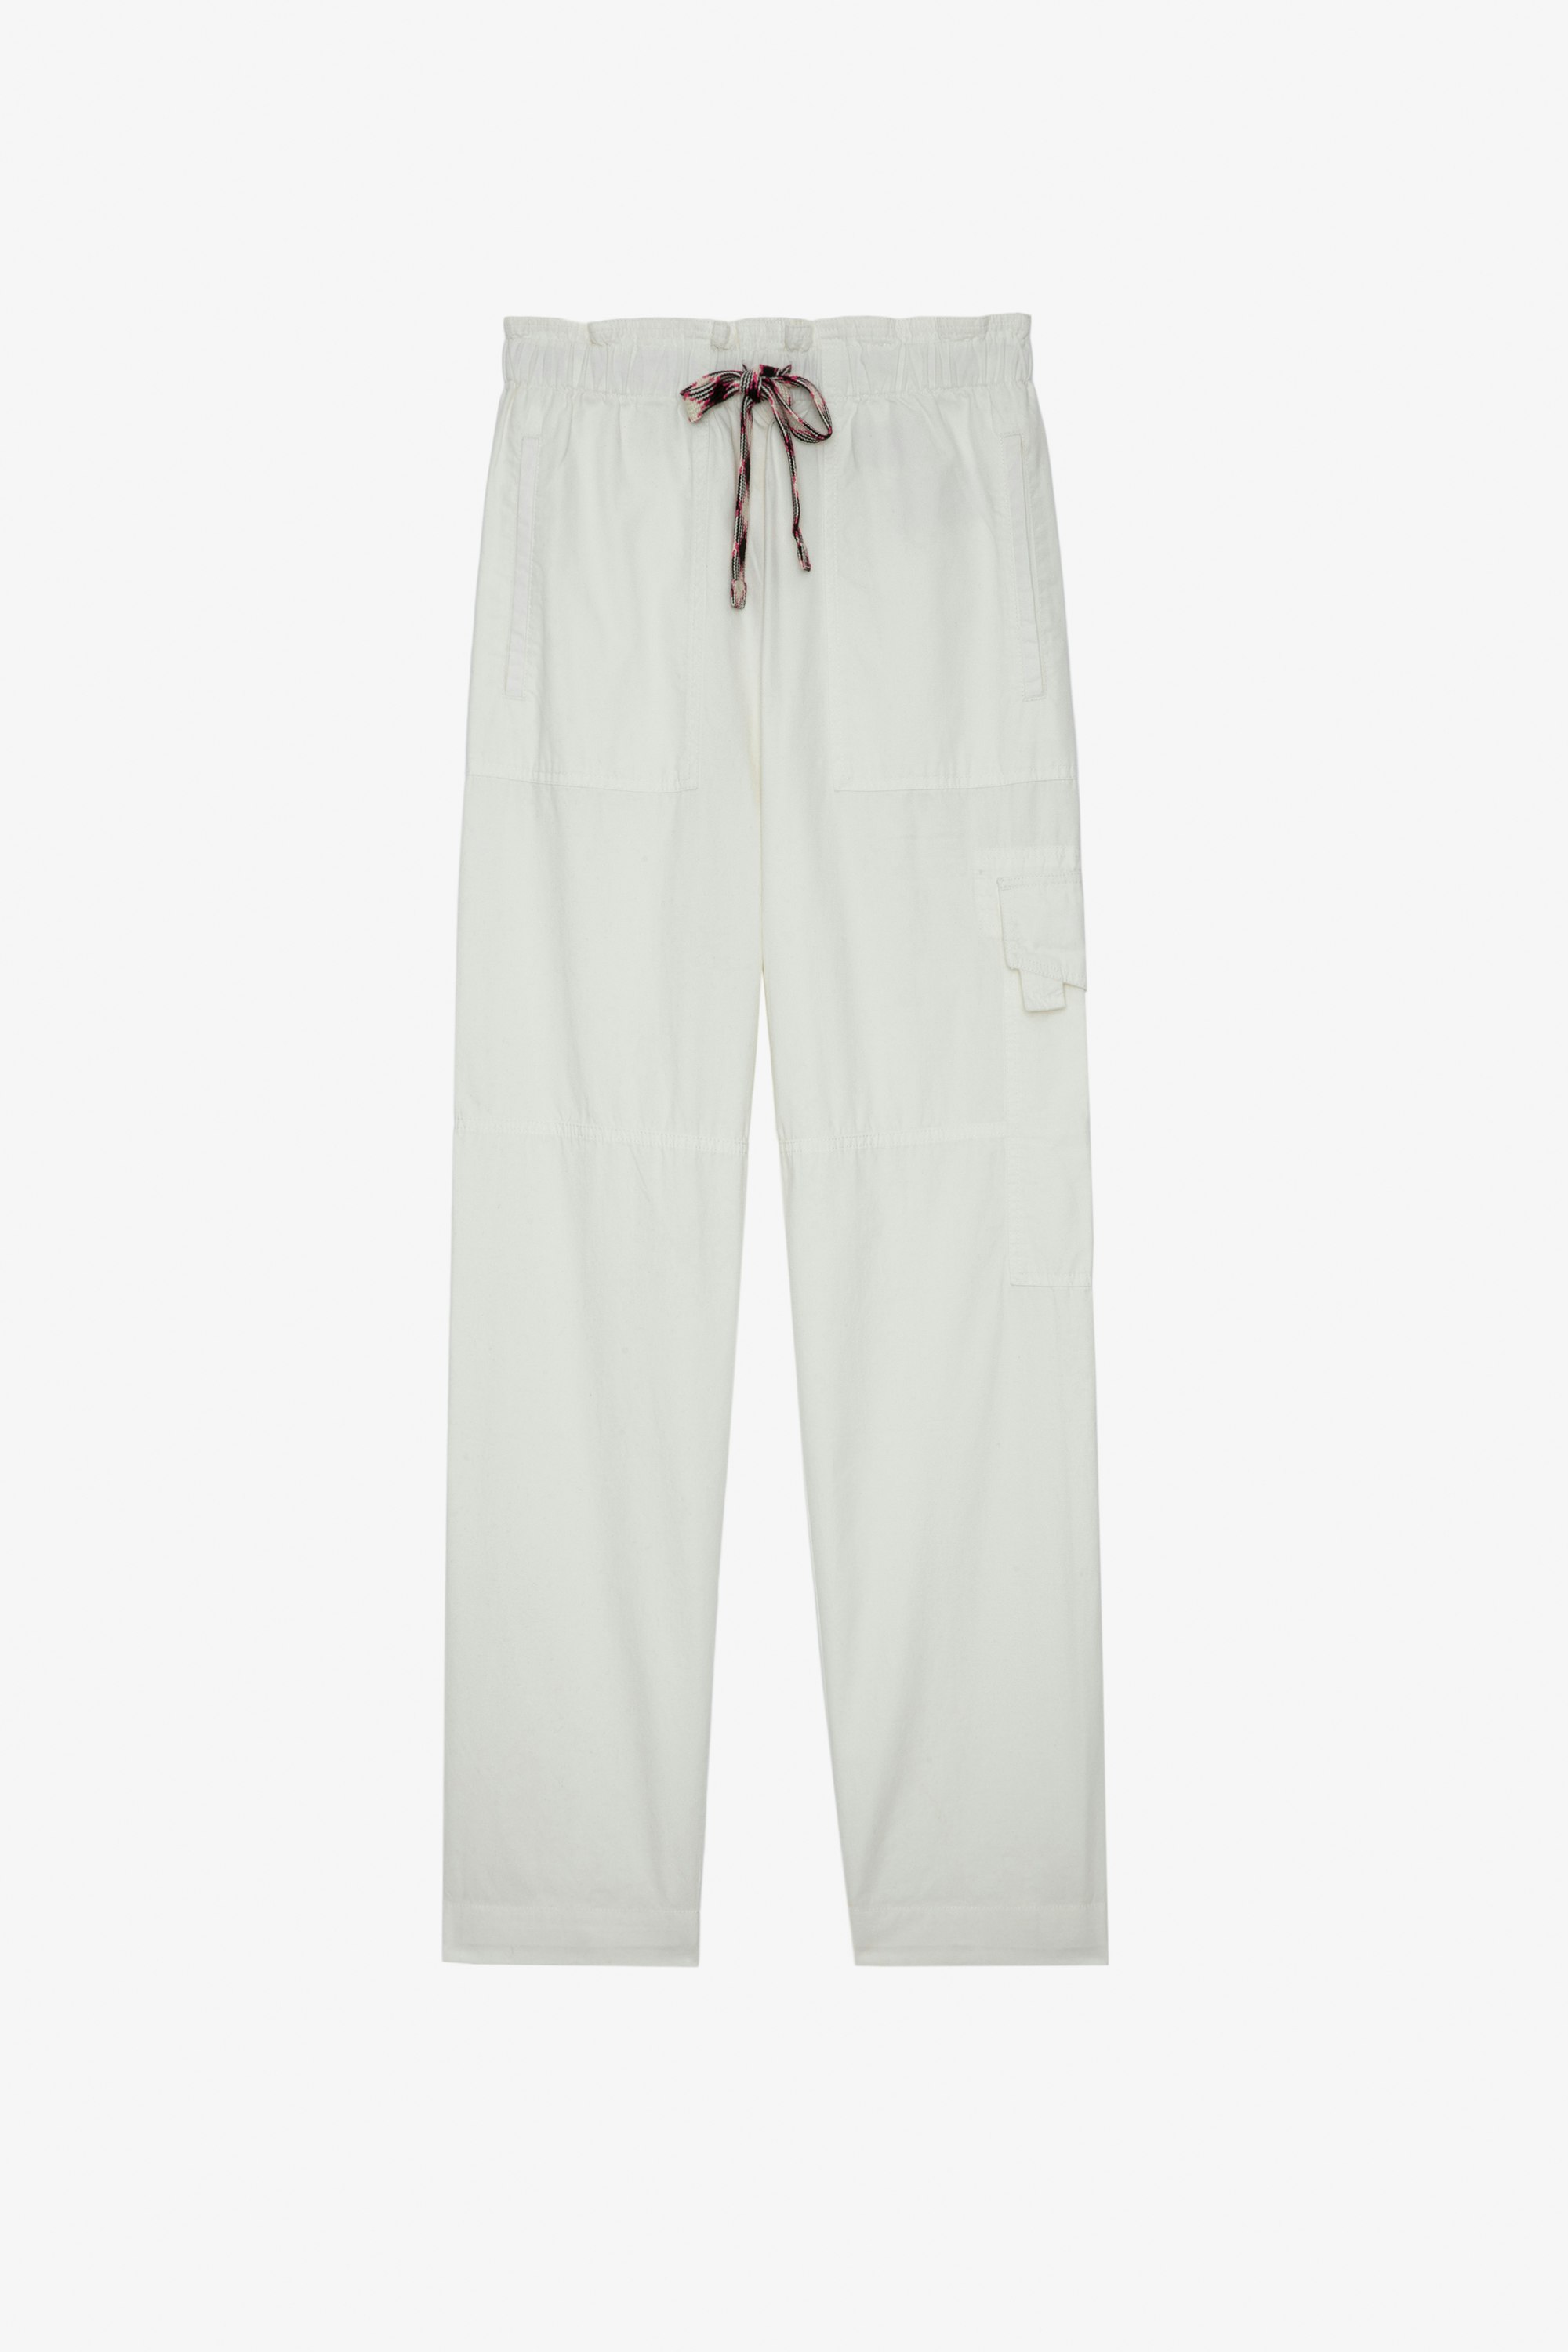 Pantalón Plumy Pantalón de algodón color blanco con cinturón Mujer